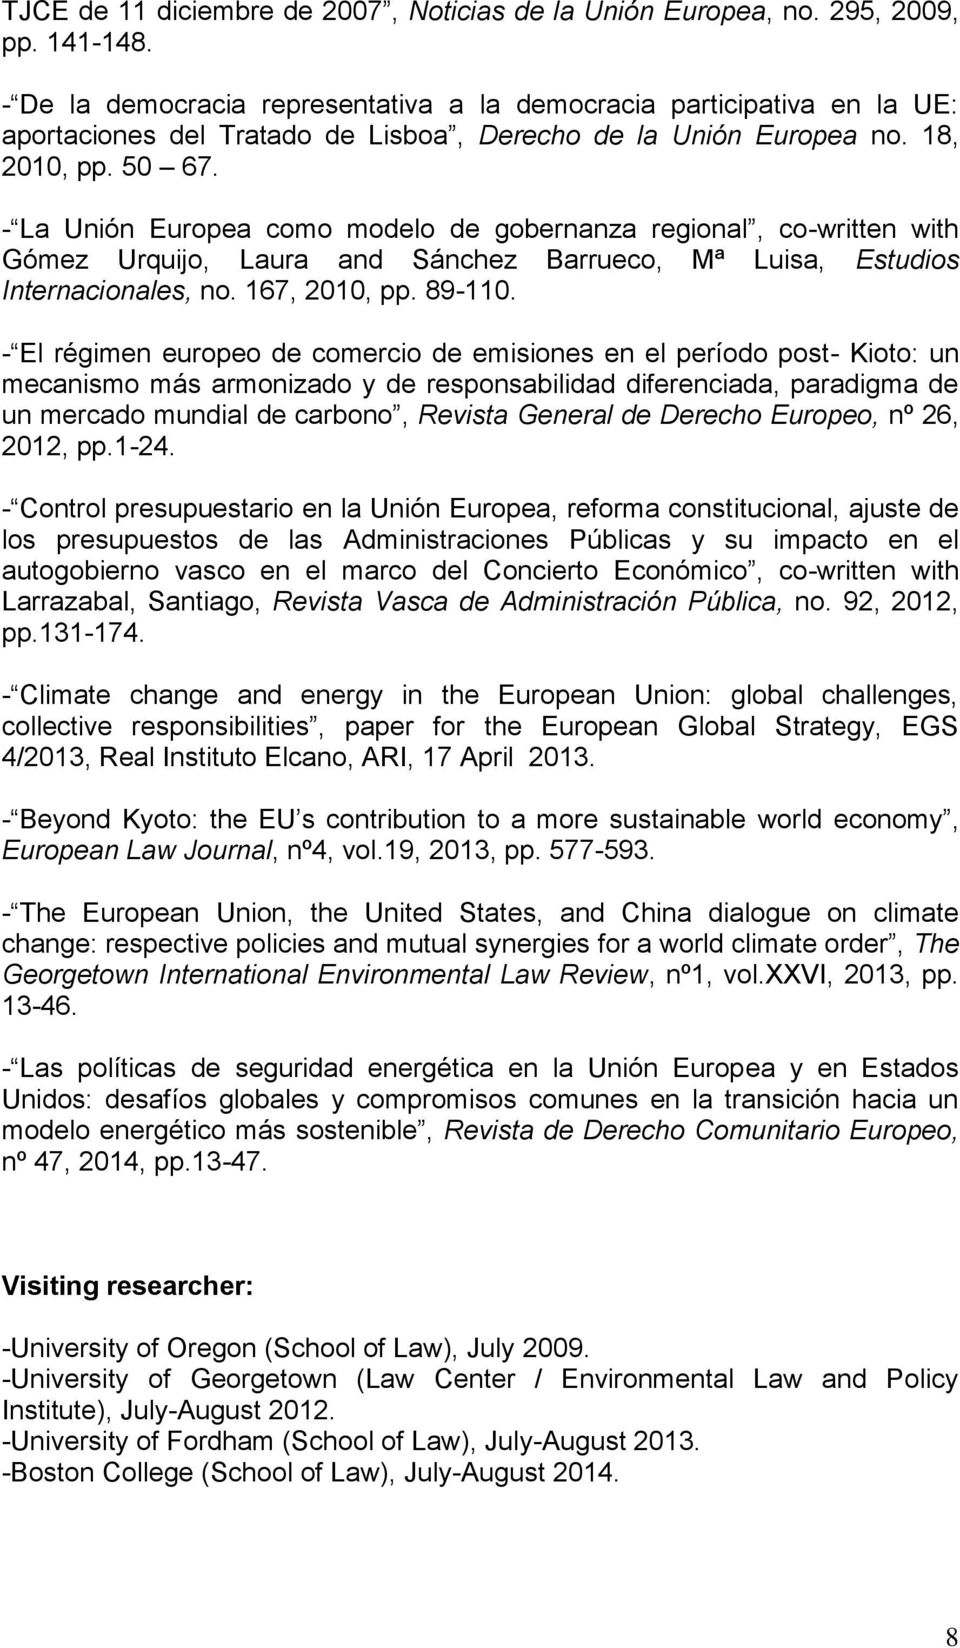 - La Unión Europea como modelo de gobernanza regional, co-written with Gómez Urquijo, Laura and Sánchez Barrueco, Mª Luisa, Estudios Internacionales, no. 167, 2010, pp. 89-110.